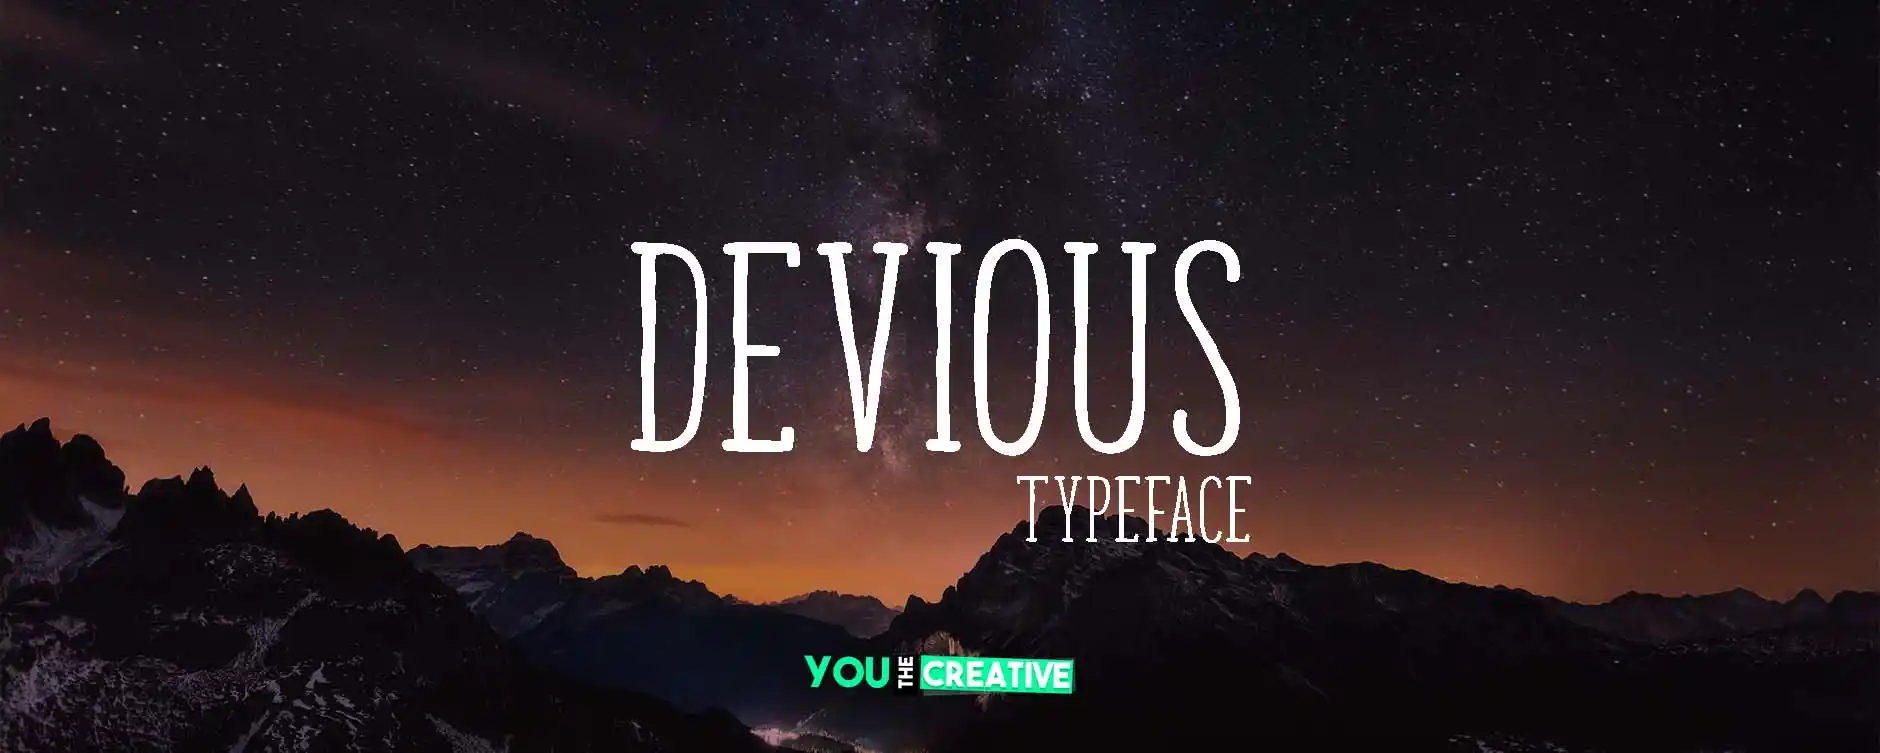 Devious font features